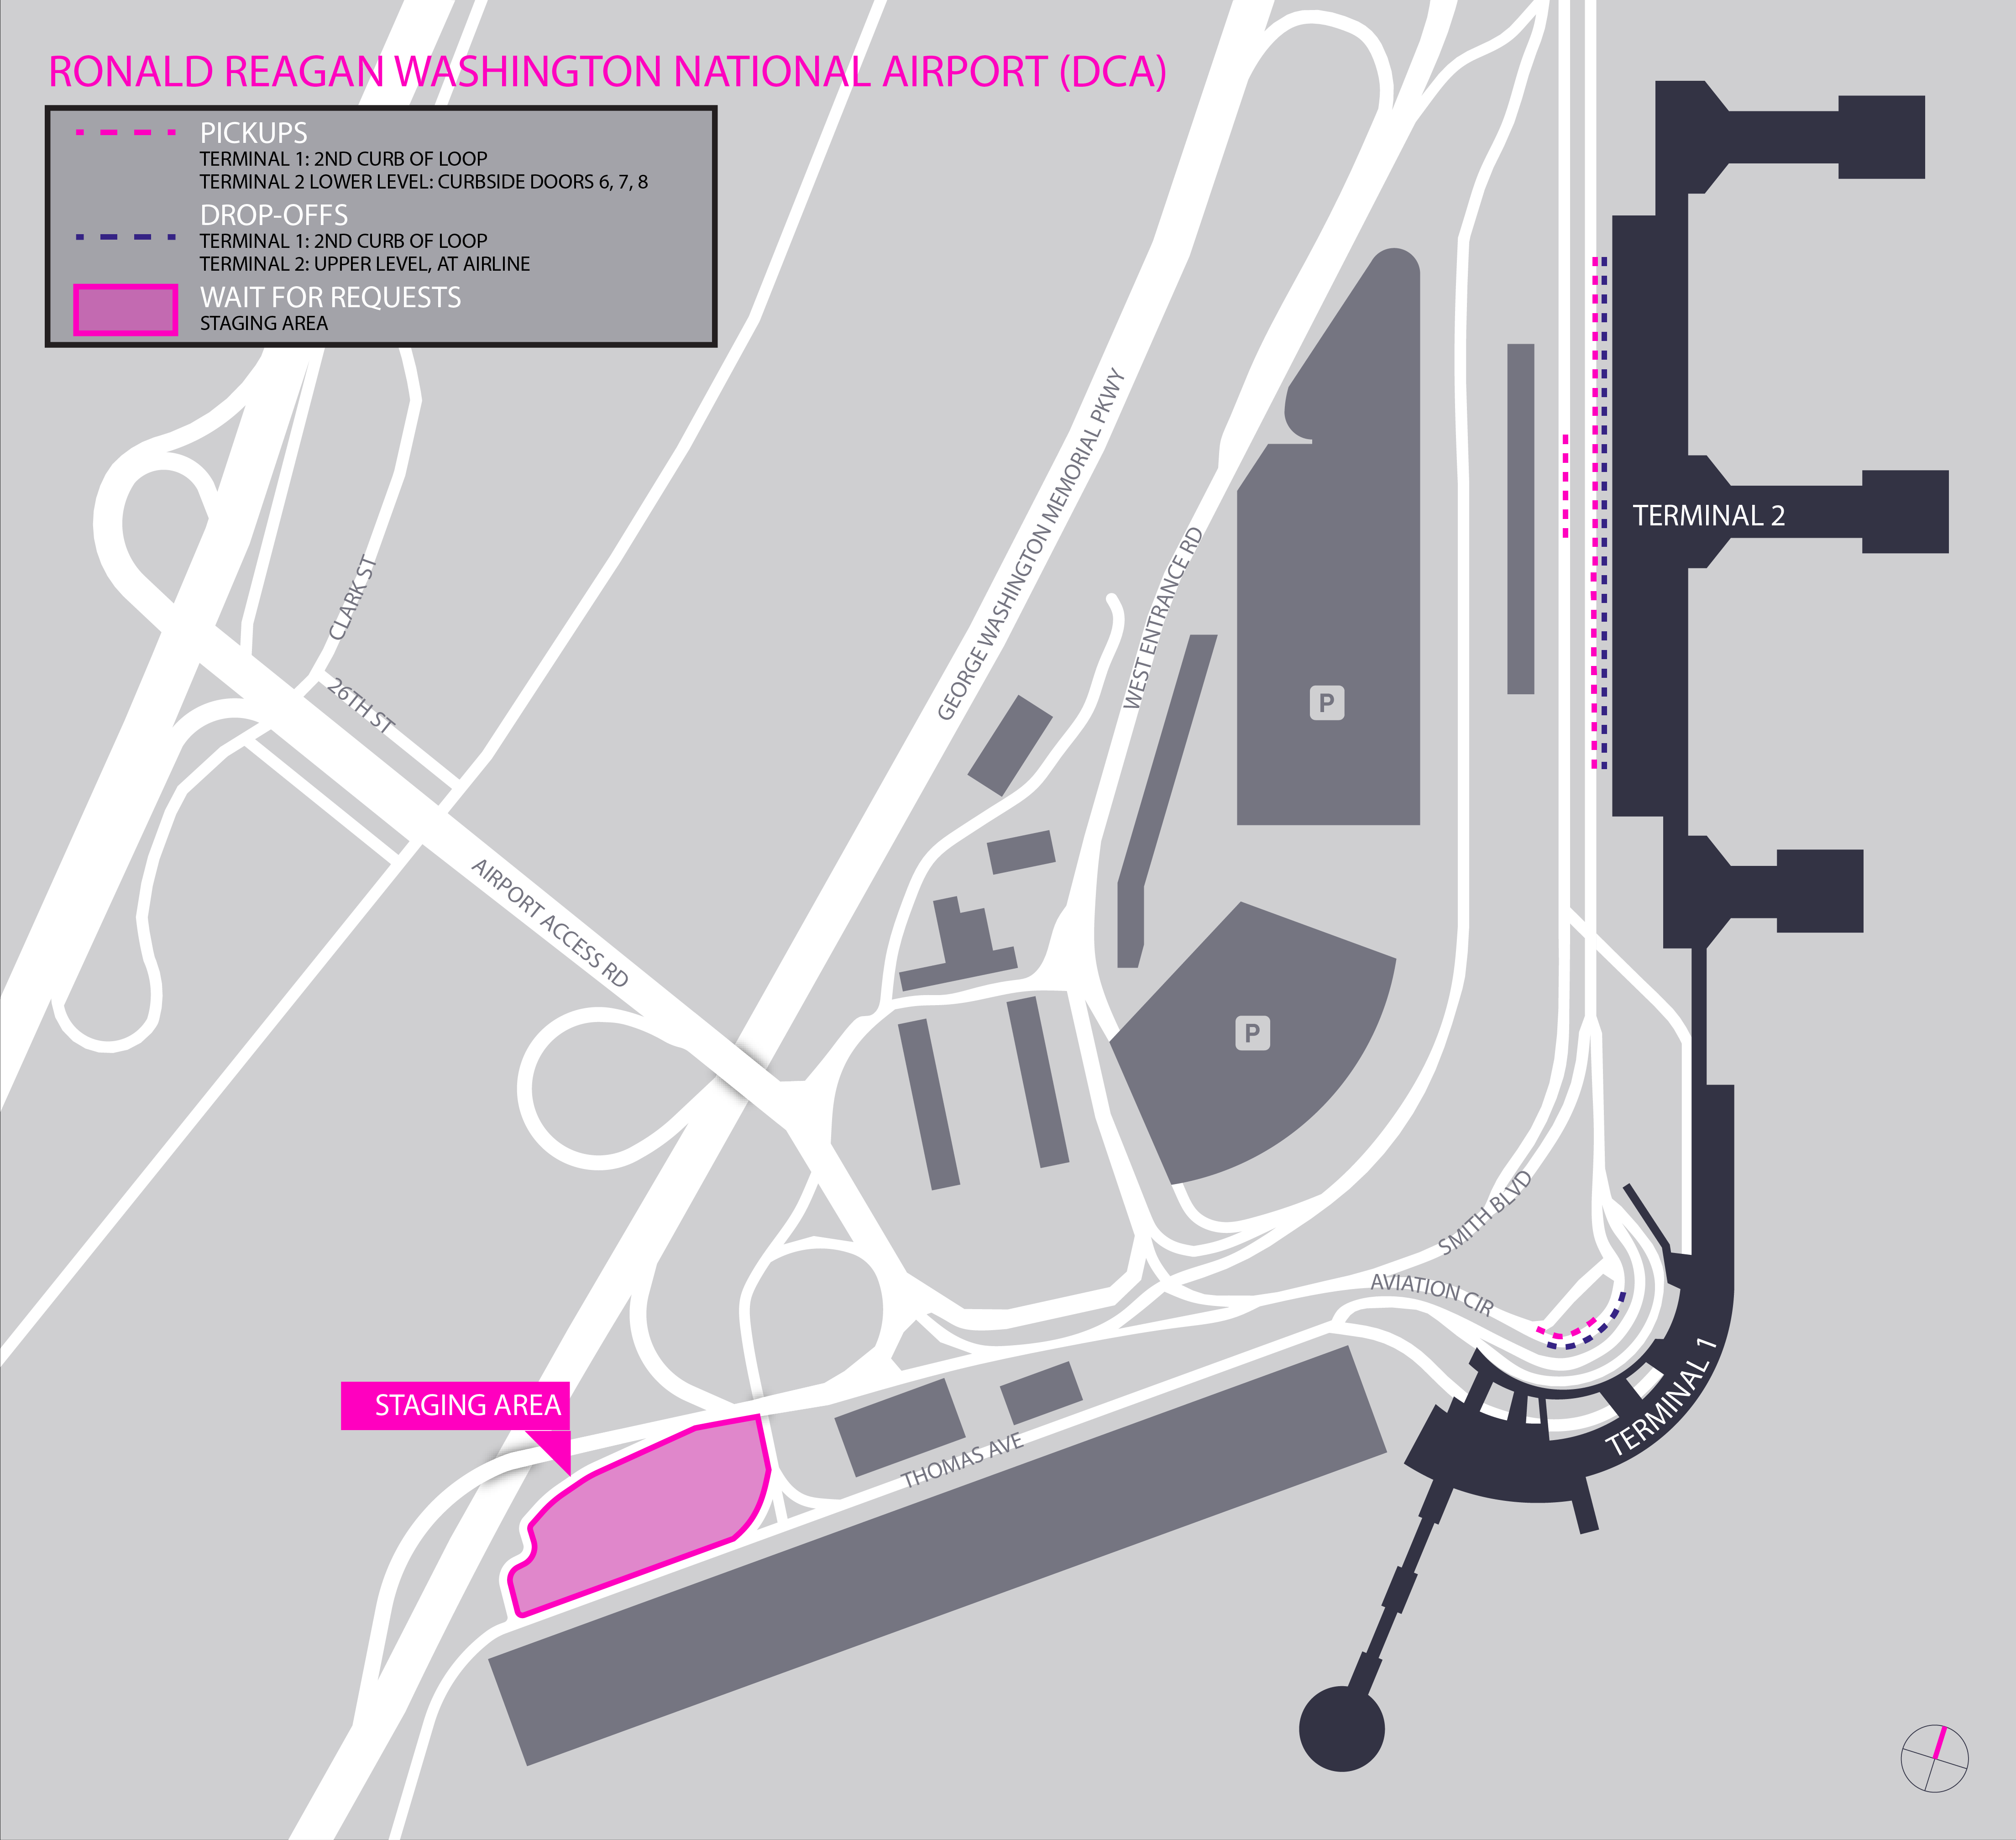 Esta imagem é um mapa do aeroporto Ronald Reagan. Ela inclui o local de espera, o ponto de encontro e as áreas de desembarque.